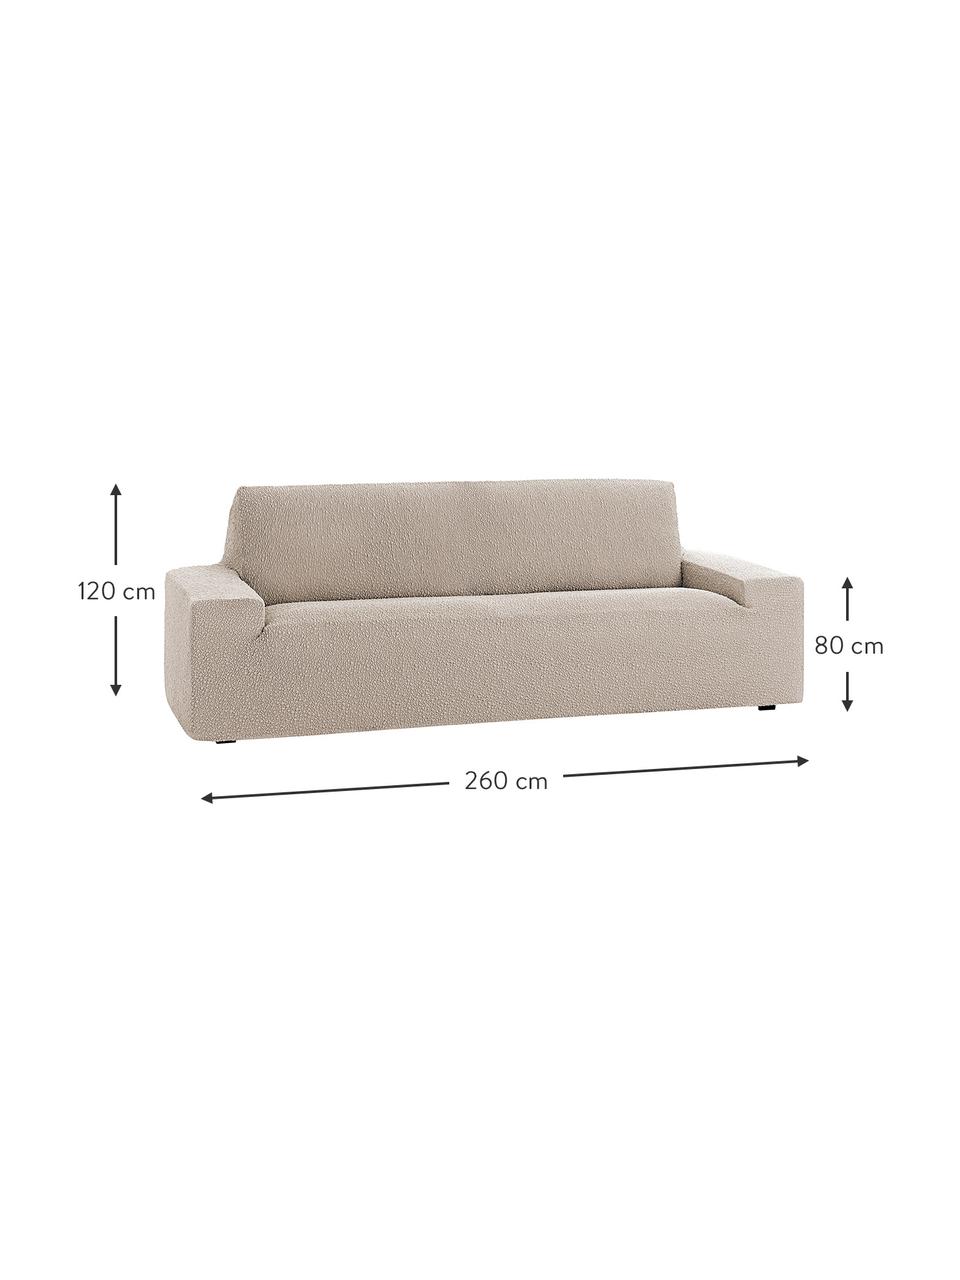 Pokrowiec na sofę Roc, 55% poliester, 35% bawełna, 10% elastomer, Odcienie kremowego, S 260 x W 120 cm